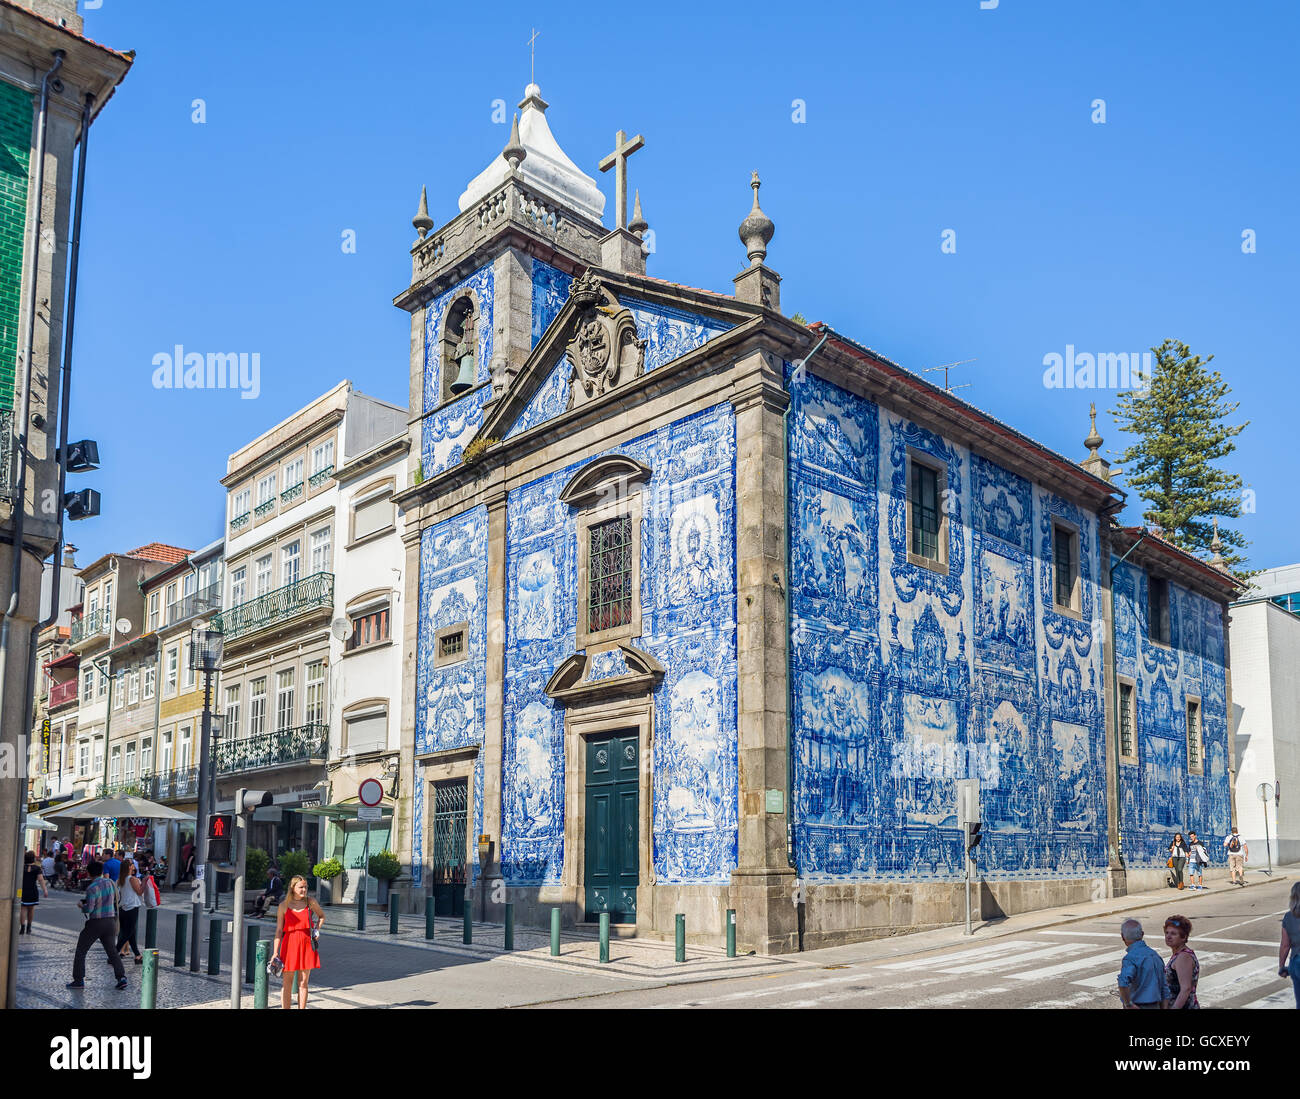 Principal facade of Capela das Almas chapel in Santa Catarina street in Porto, Portugal Stock Photo